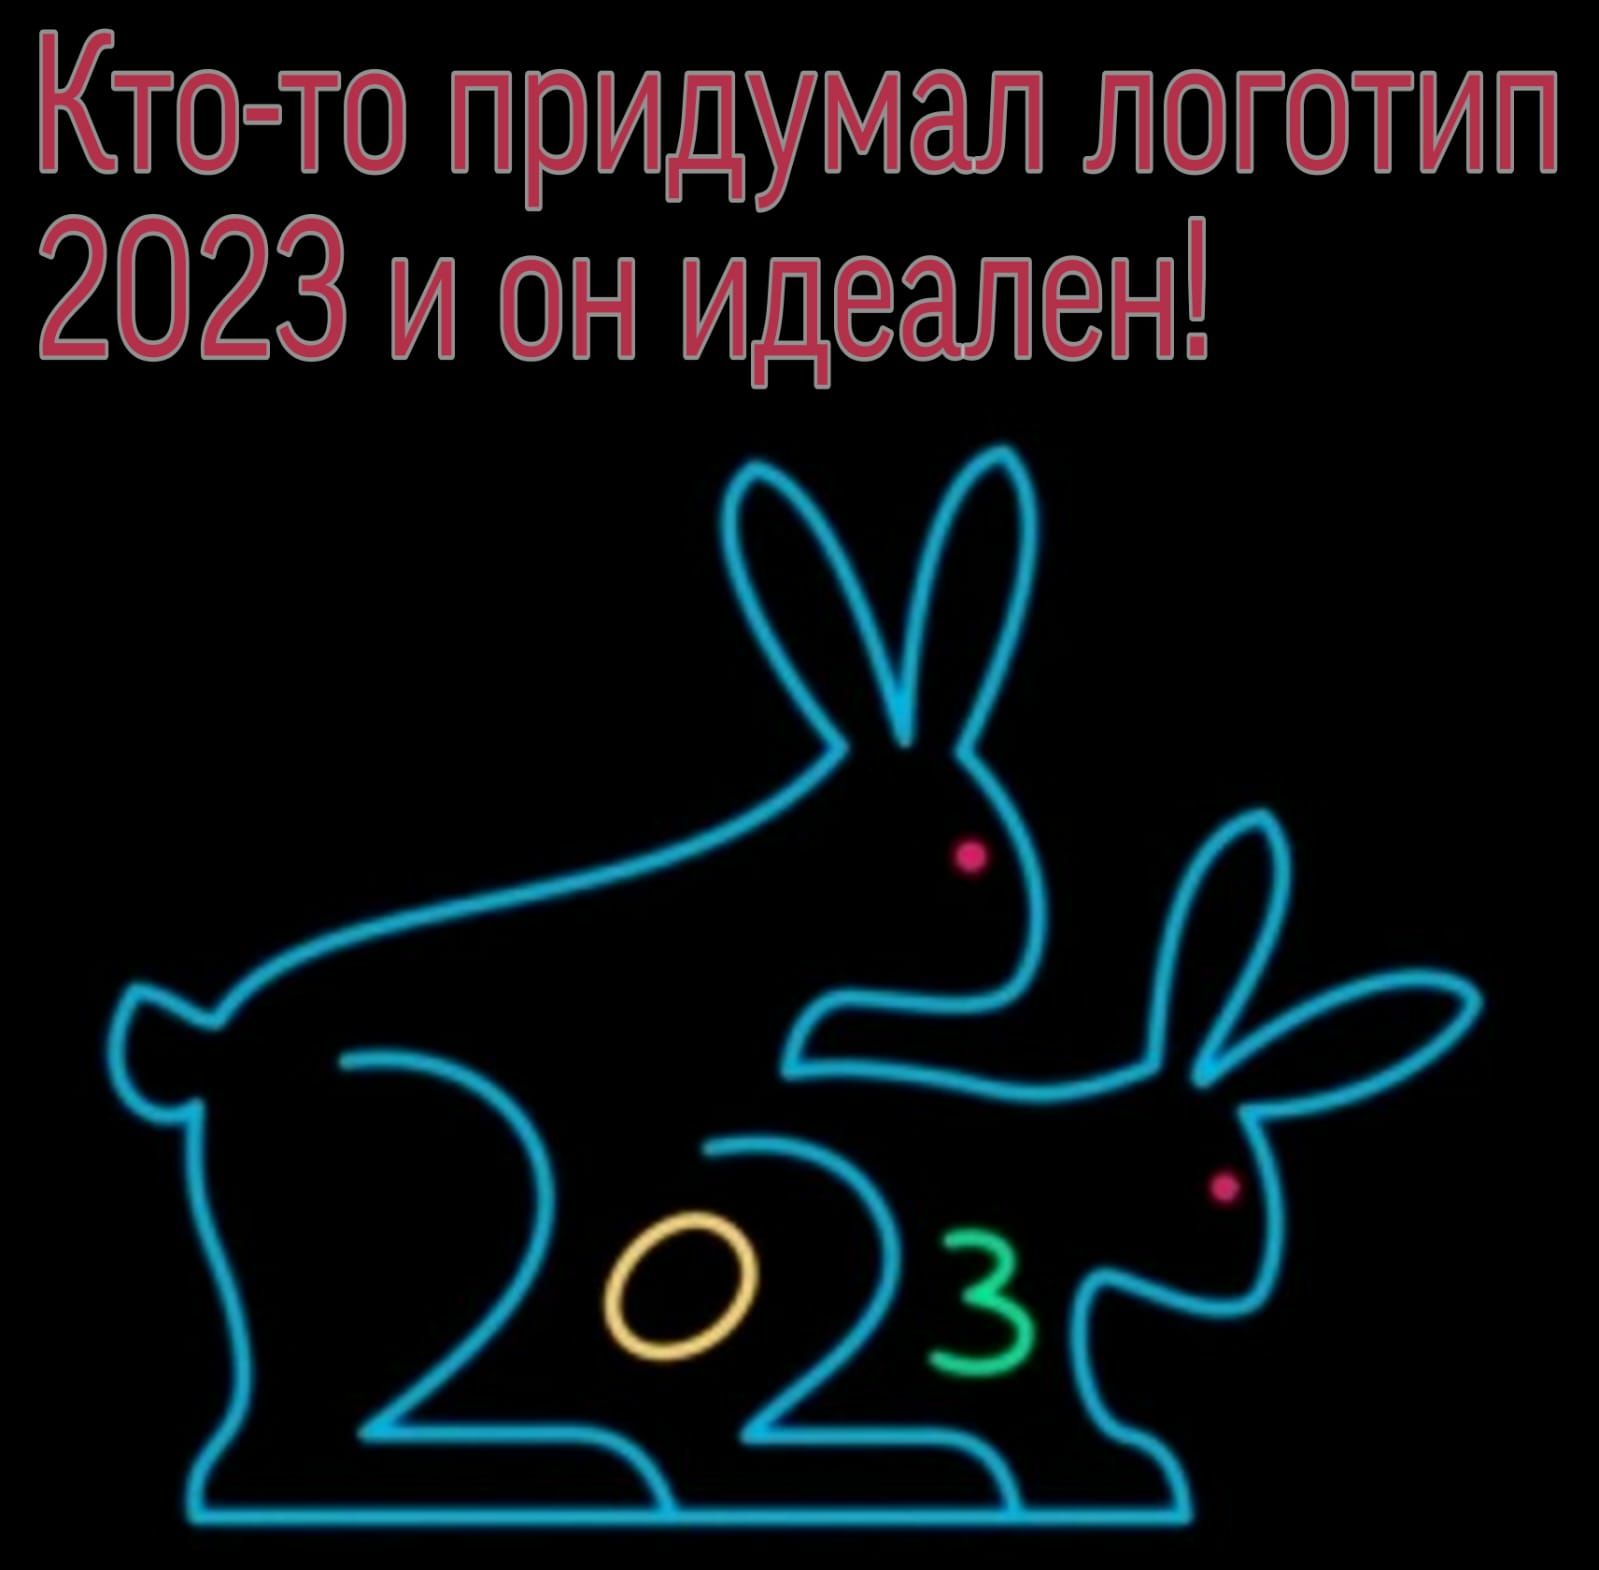 Кто то придумал логотип 2023 и он идеален